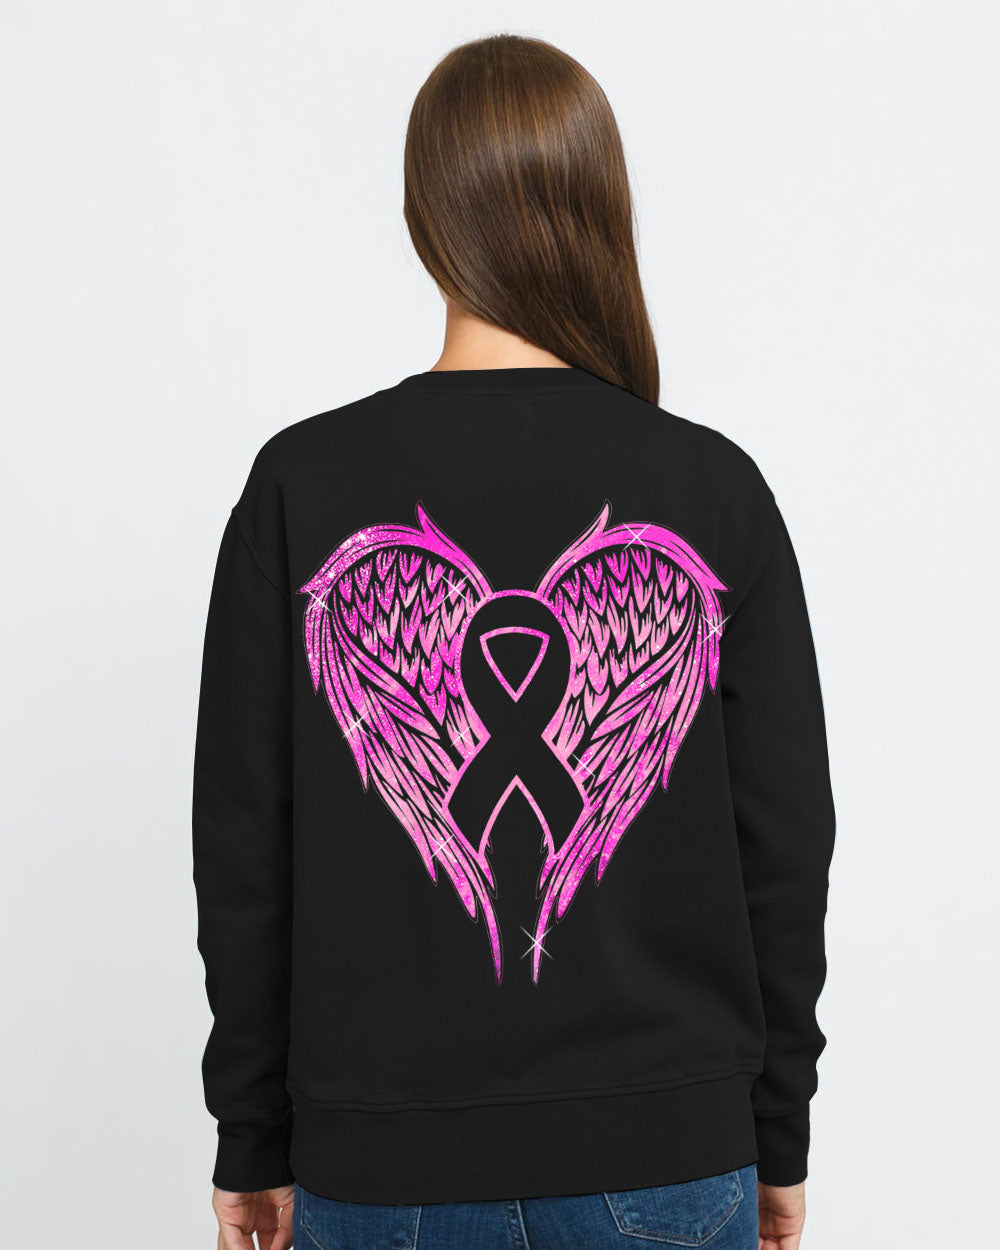 Wings Ribbon Spakle Women's Breast Cancer Awareness Sweatshirt